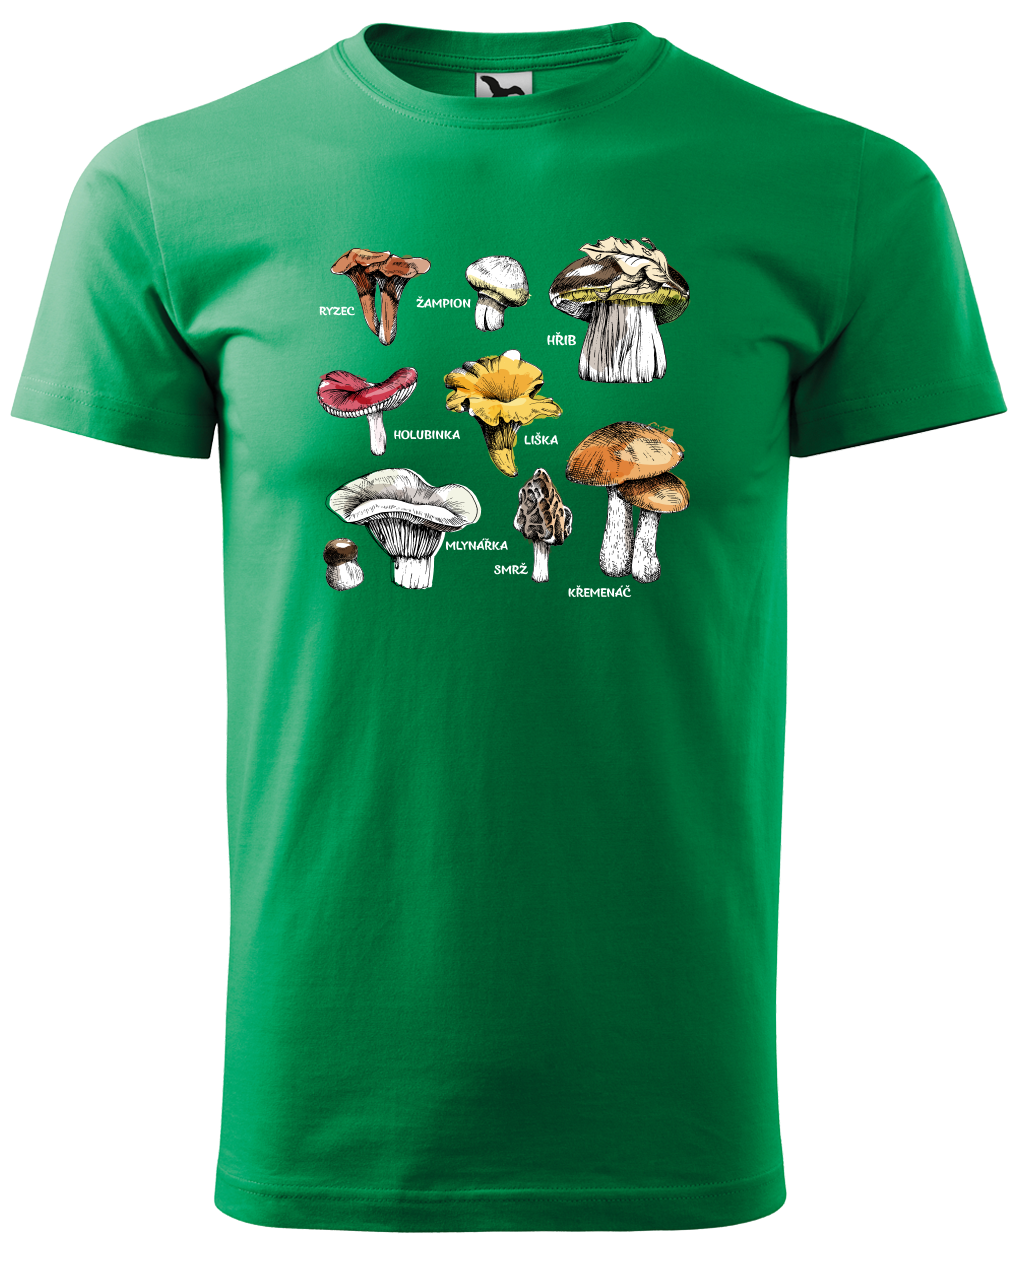 Tričko s houbami - Hřib, Křemenáč a další Velikost: XL, Barva: Středně zelená (16)